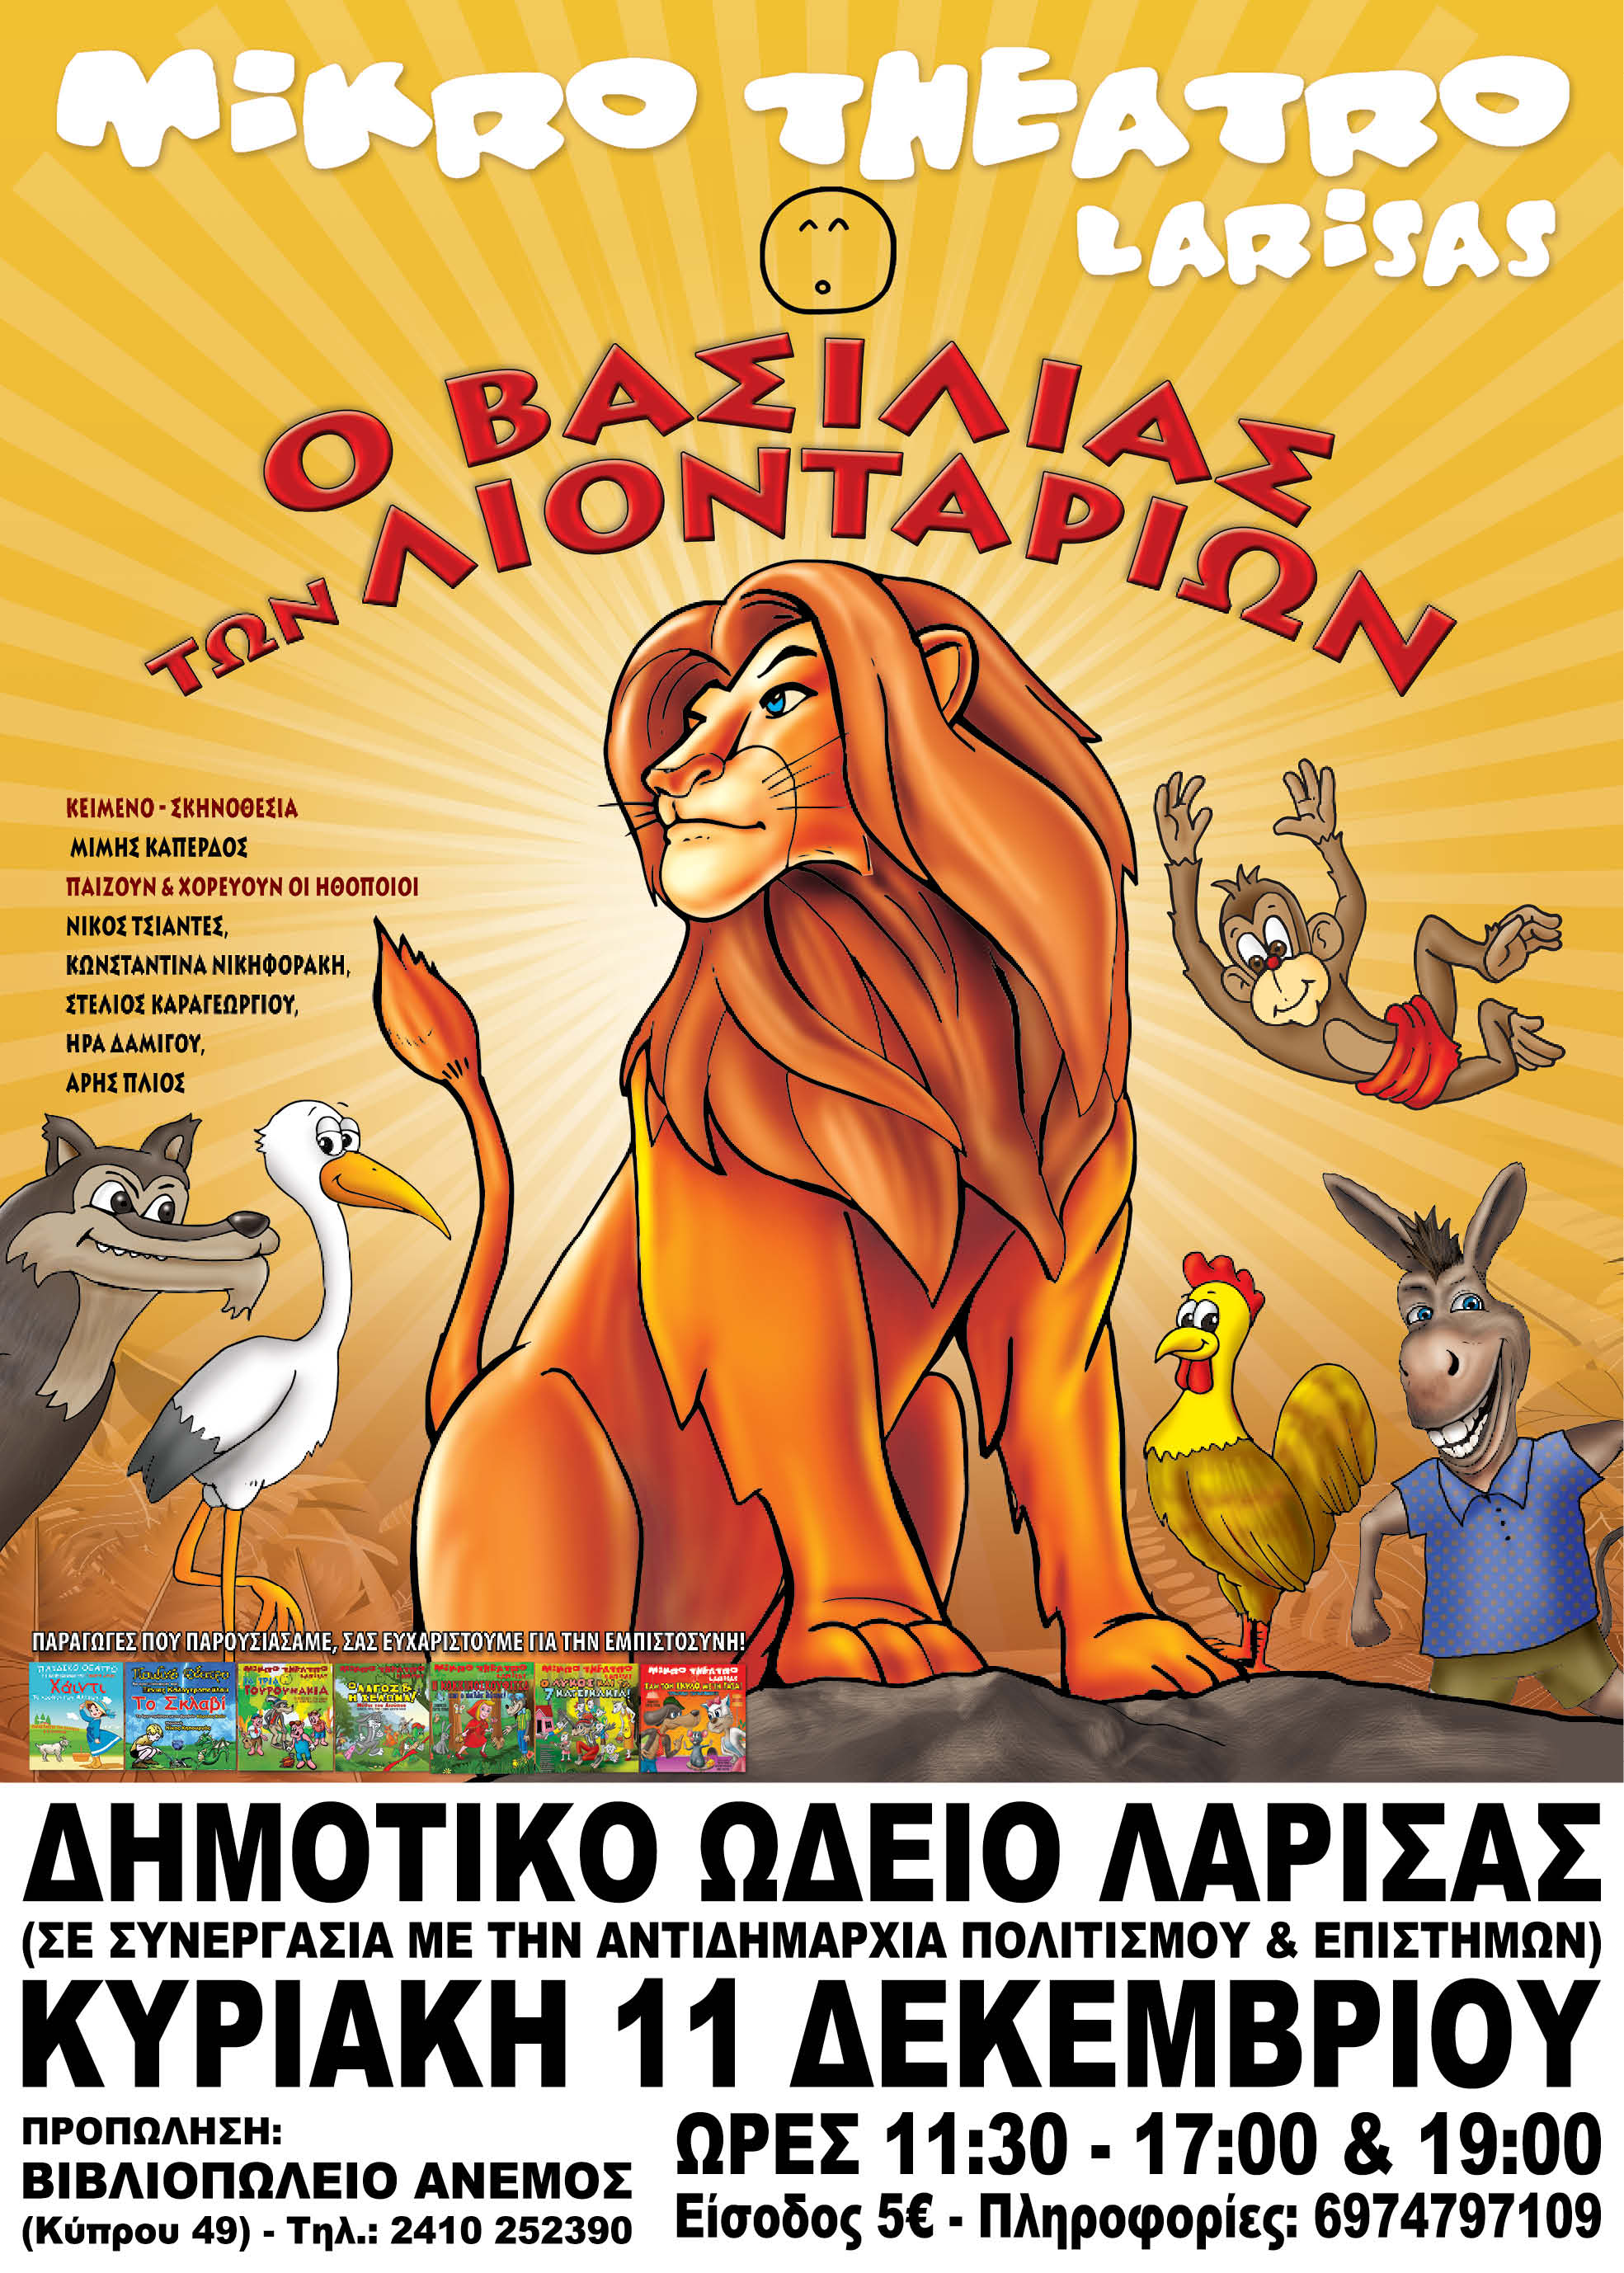 Κερδίστε διπλή πρόσκληση για την παράσταση "Ο Βασιλιάς των Λιονταριών" στο ΔΩΛ